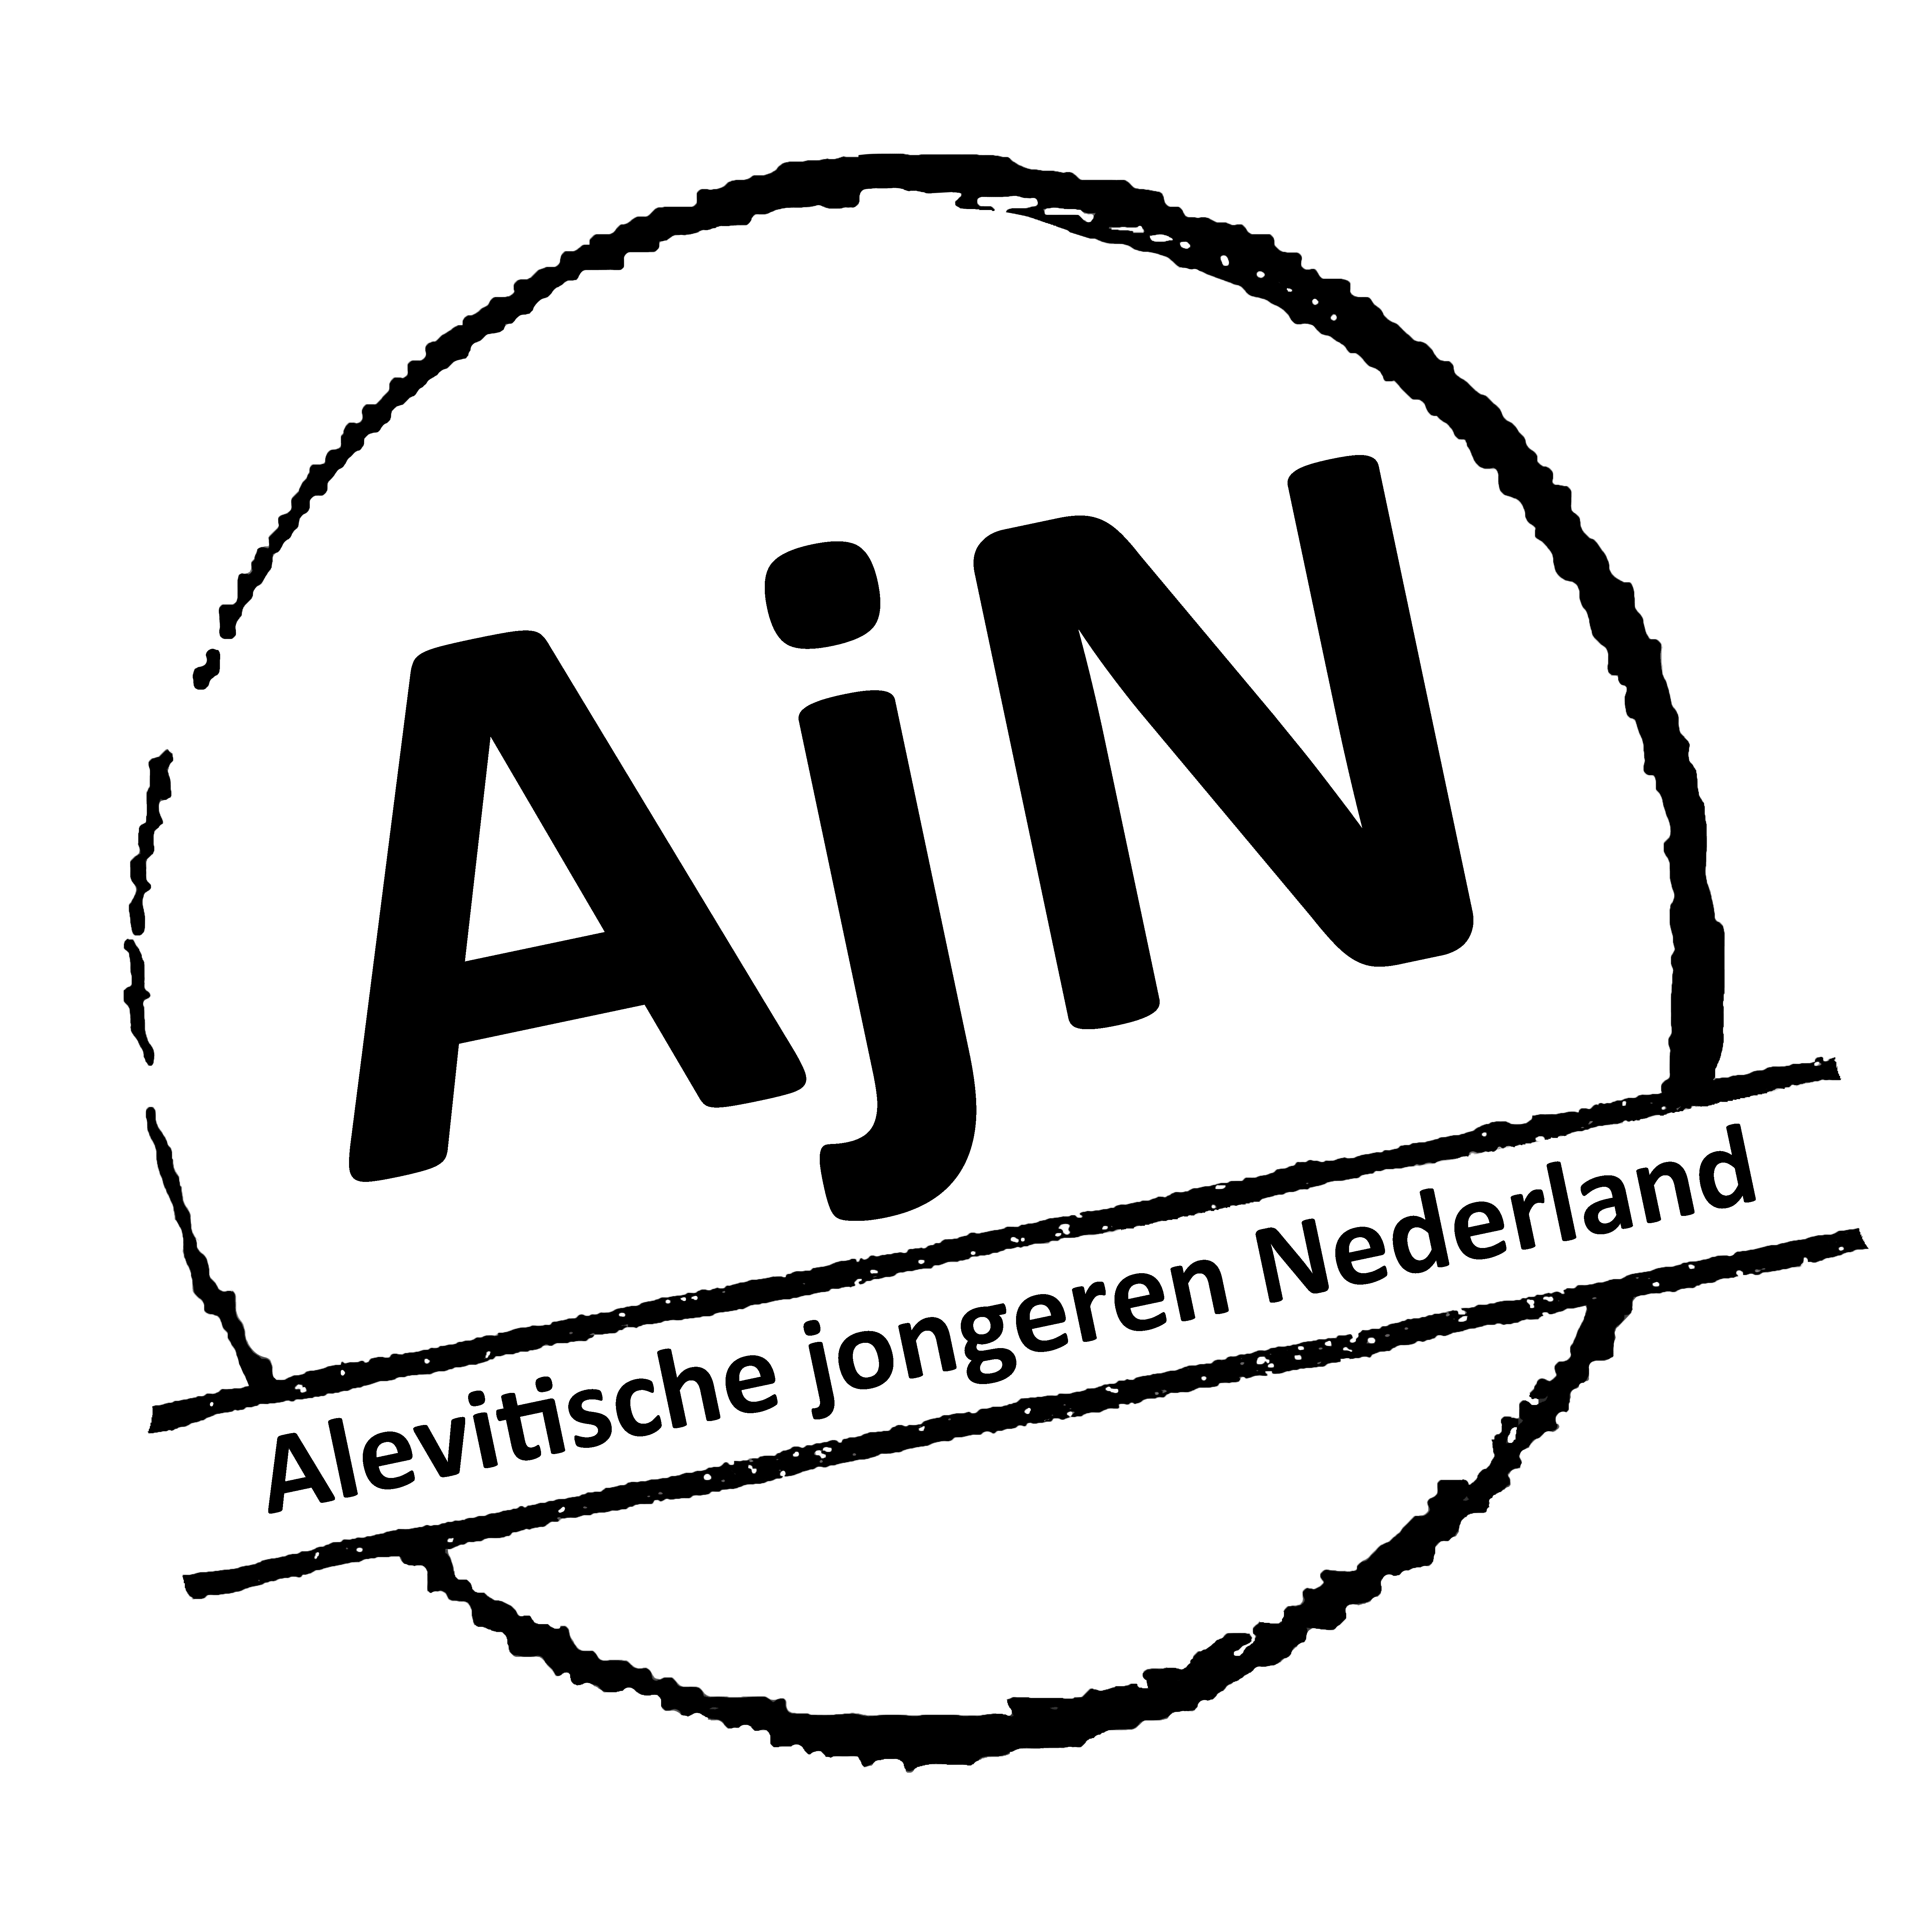 Alevitische jongeren Nederland